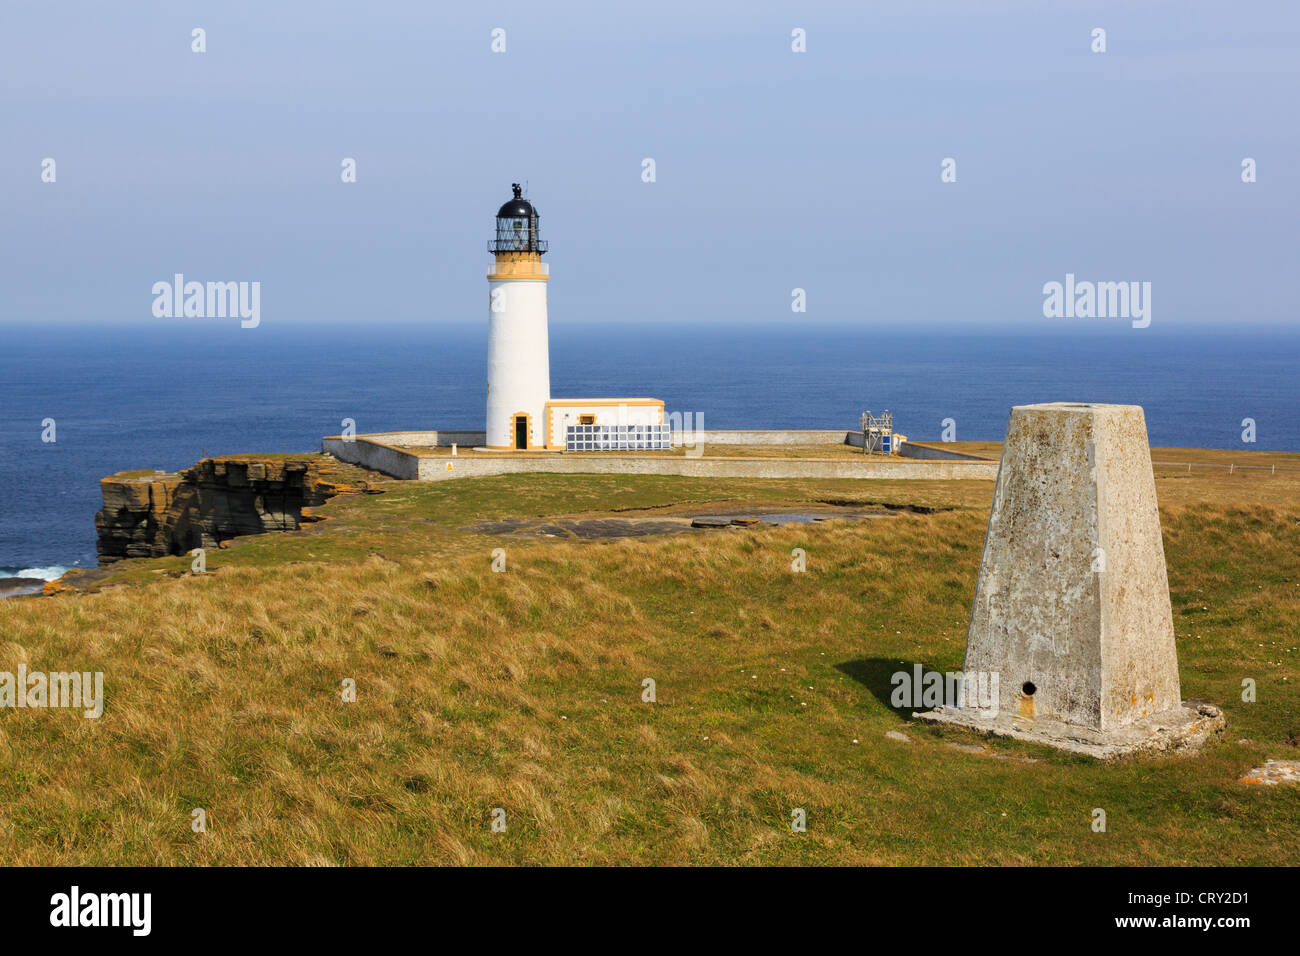 Trig Point et phare construit sur la pointe d'avertir les navires au large de l'Amérique du haut-fond en tête Noup, île de Westray, Orkney Islands, îles du Nord, Écosse, Royaume-Uni Banque D'Images